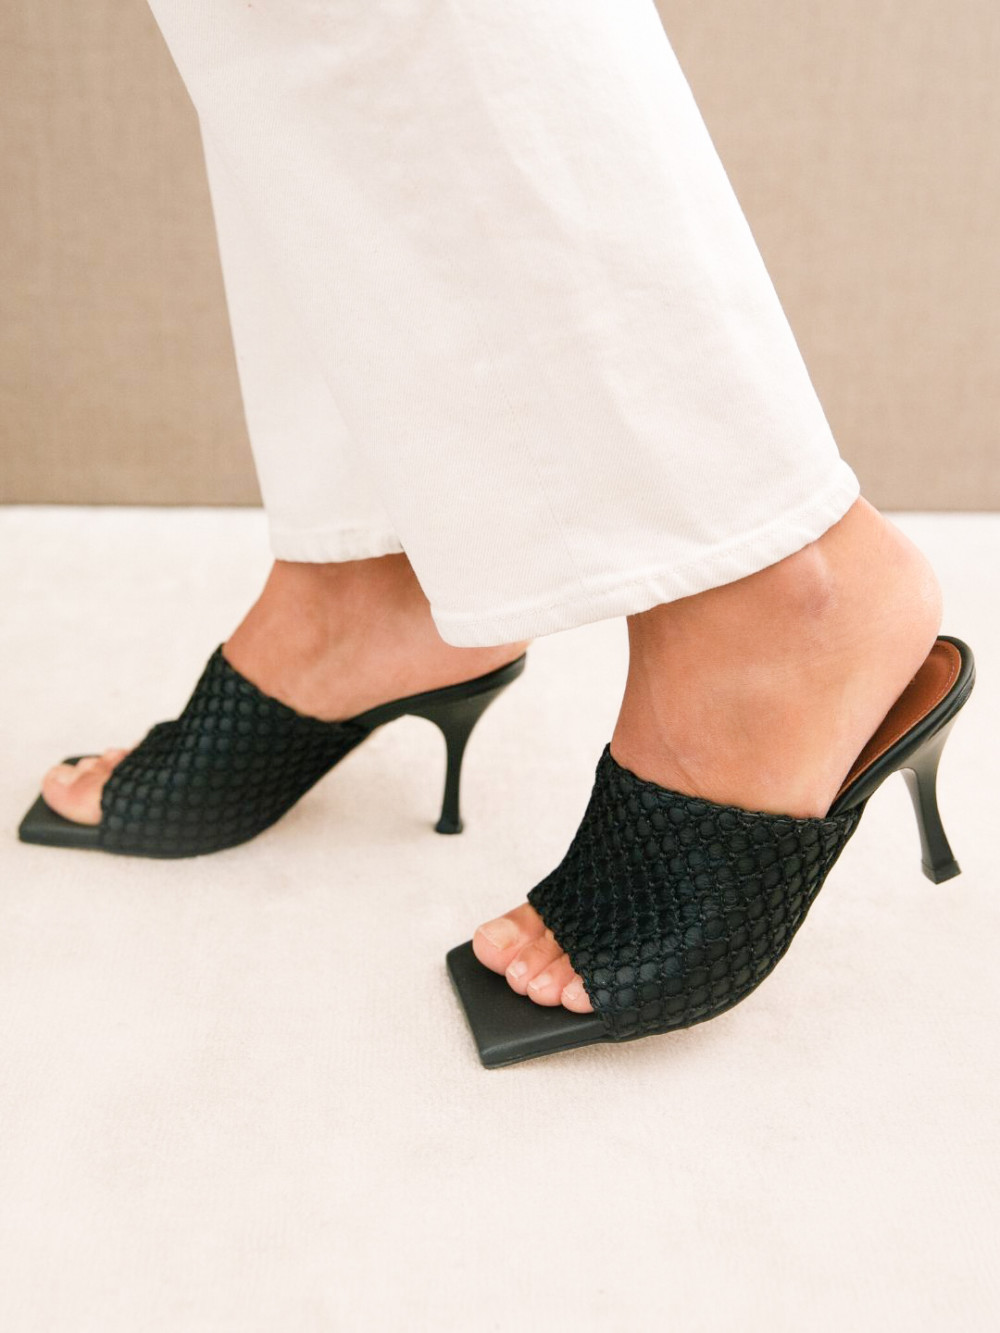 Blog Mode Chaussures Tendance Printemps été 2020 Mules Talon Sandales Bout Carré Sandales Brides 10